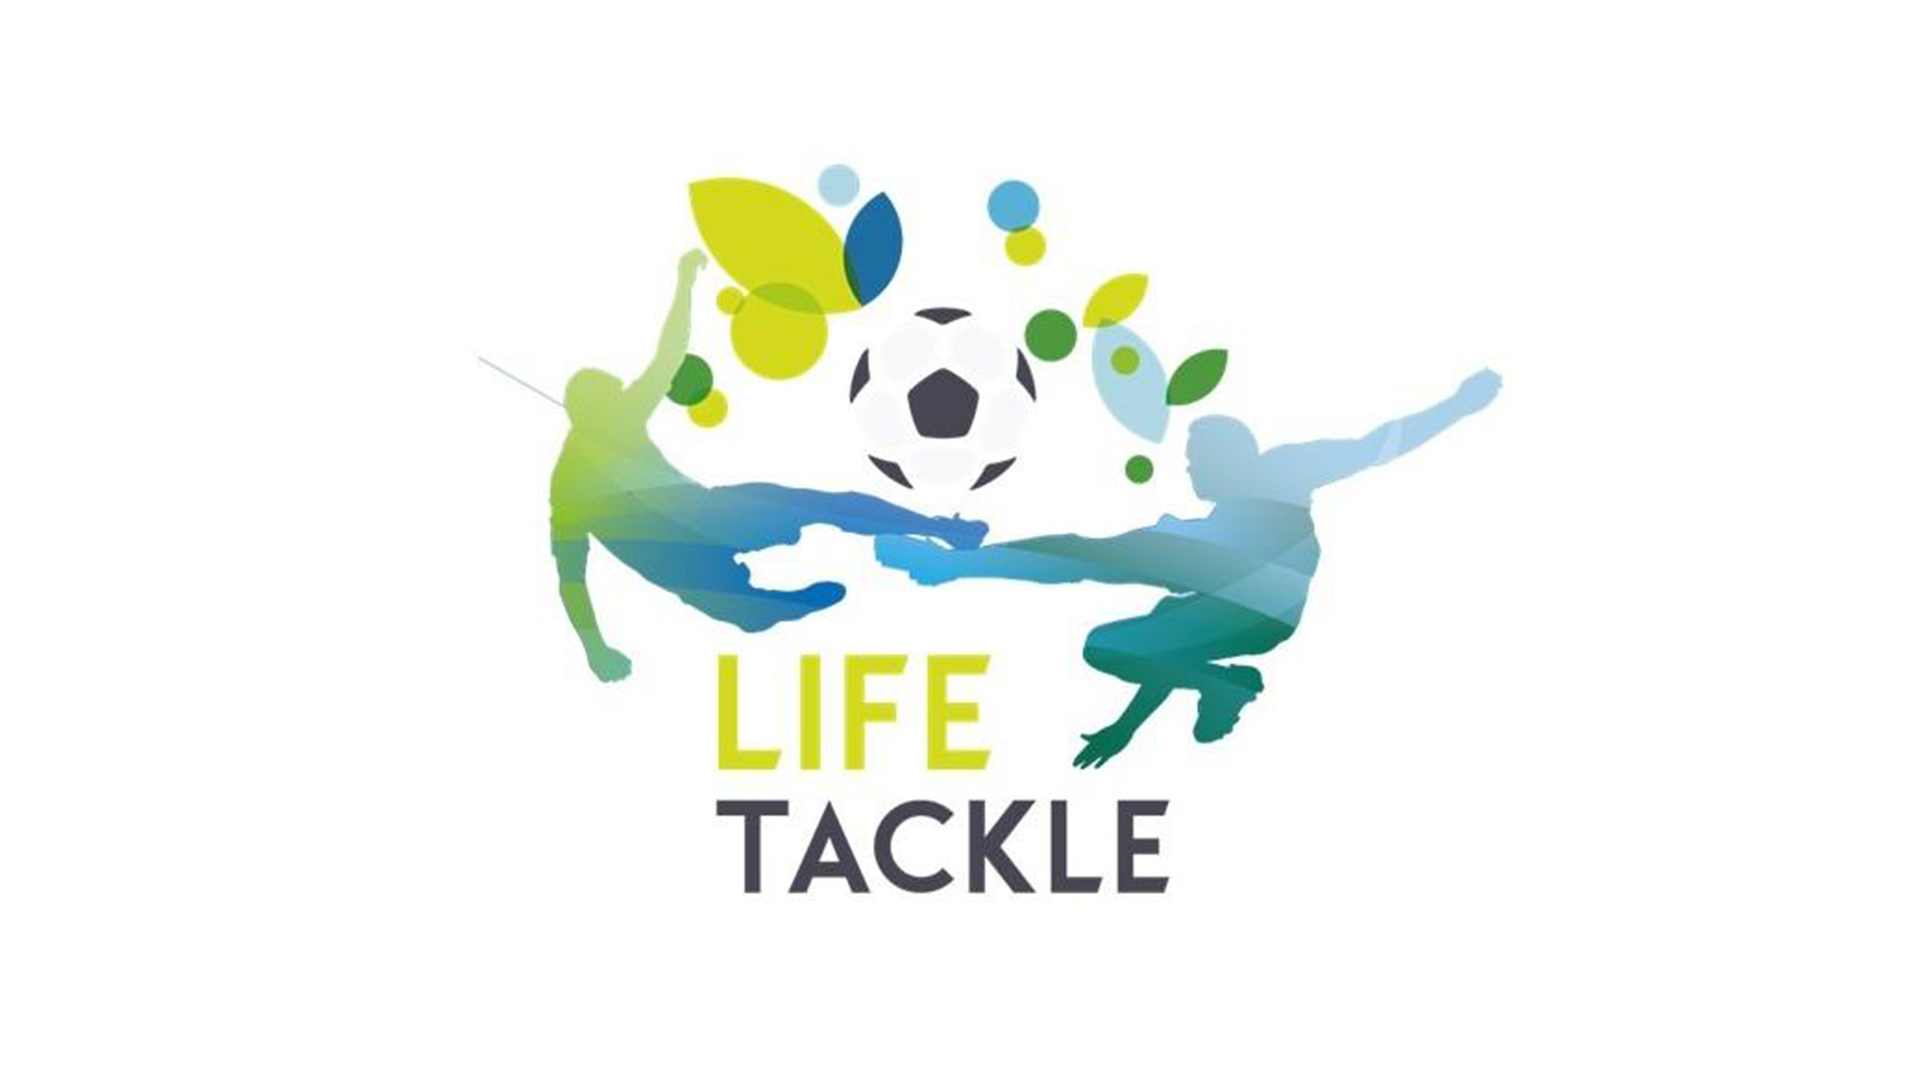 Life Tackle e Carta sulla Sostenibilità ambientale del calcio